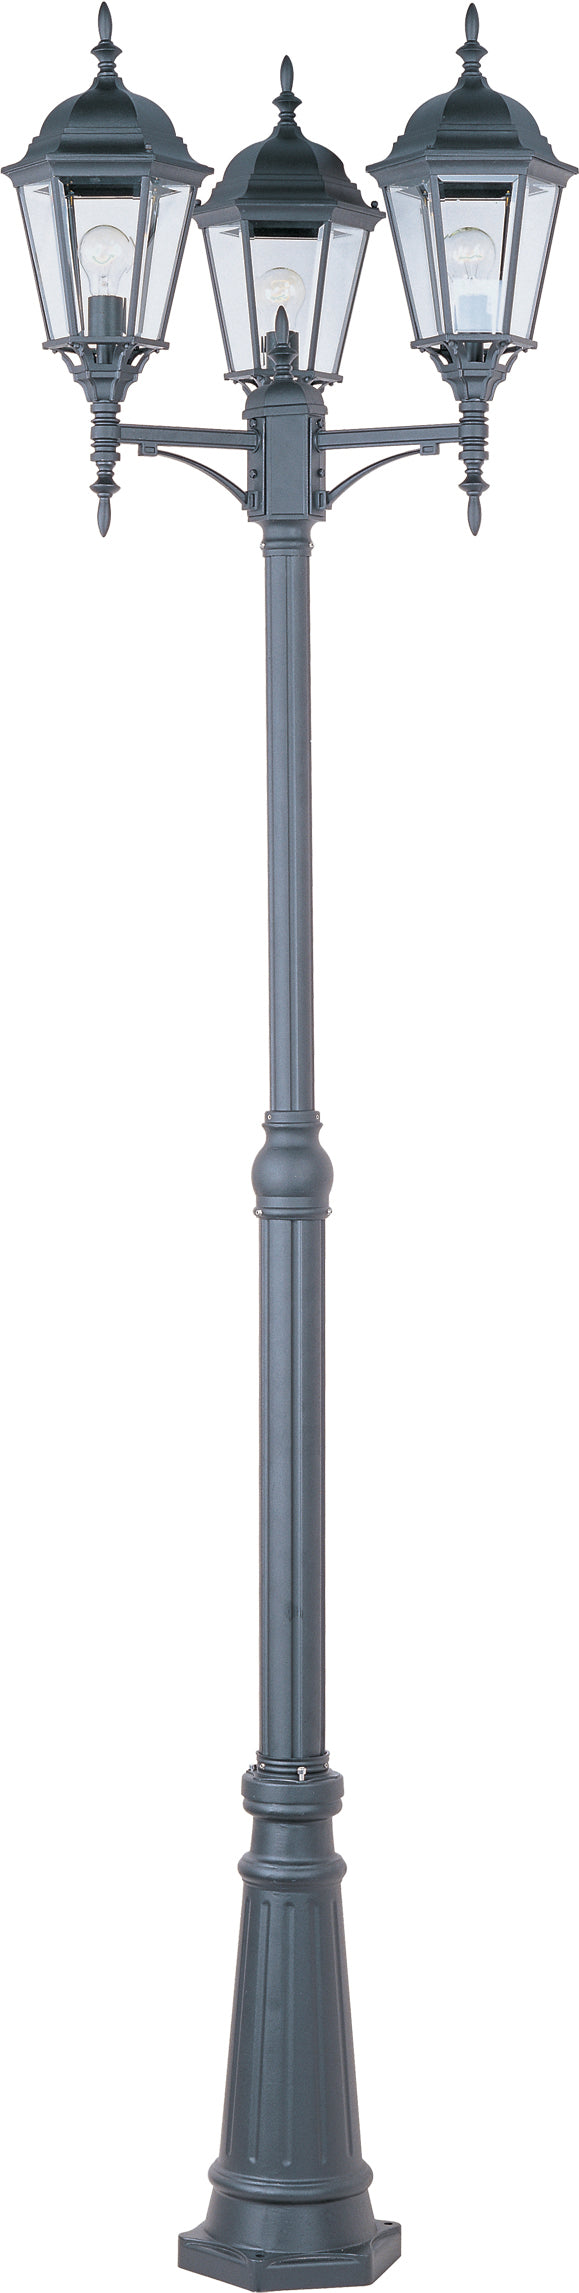 3-Light Outdoor Pole/Post Lantern